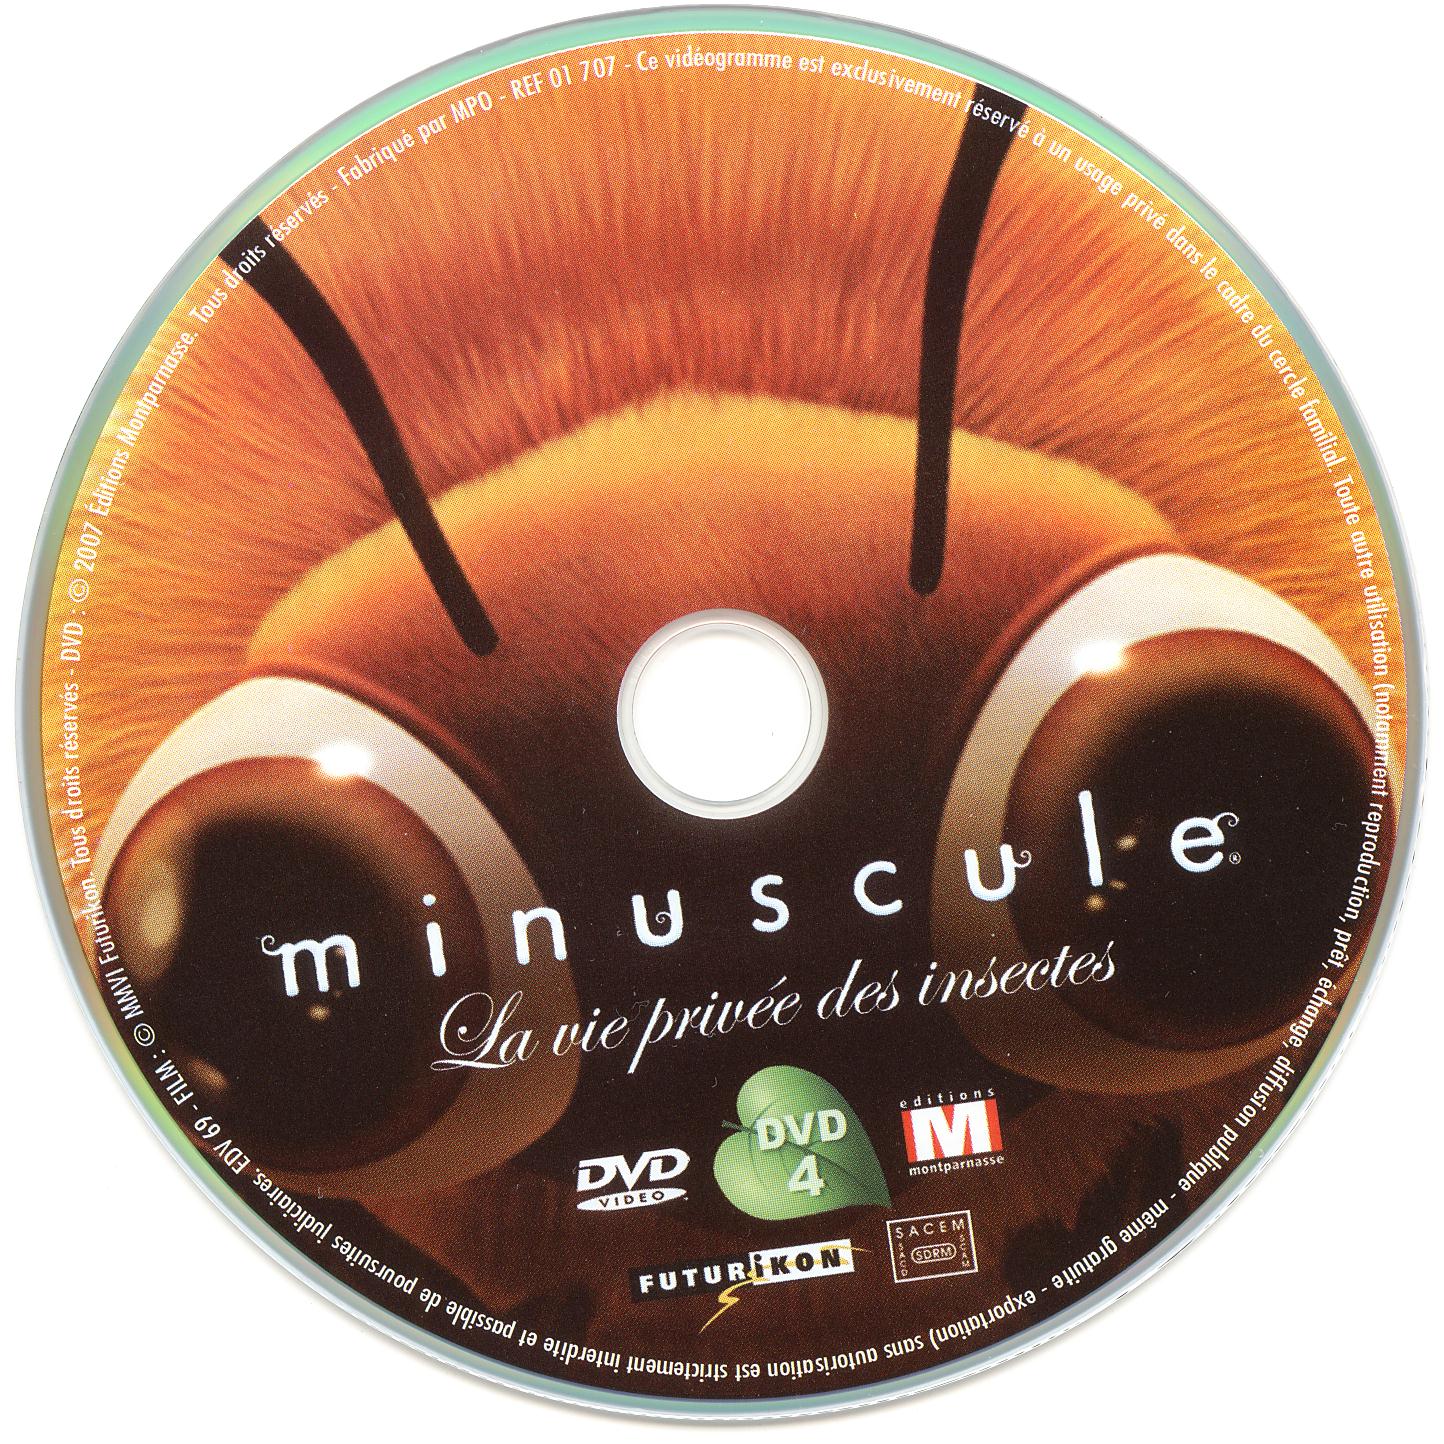 Minuscule DVD 4